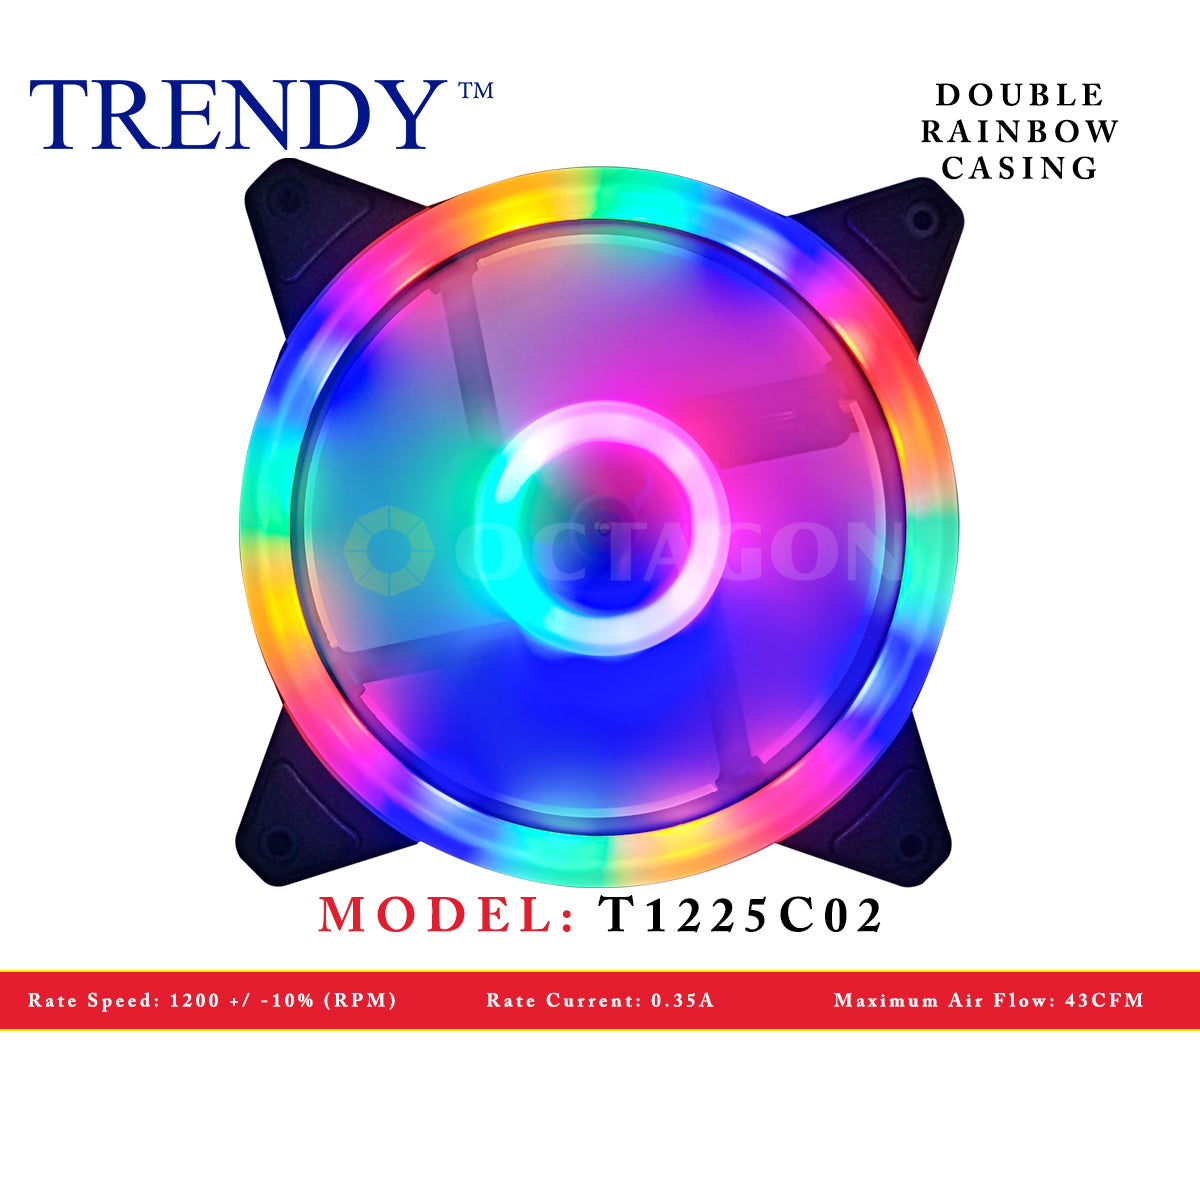 TRENDY T1225C02 DOUBLE RAINBOW CASING